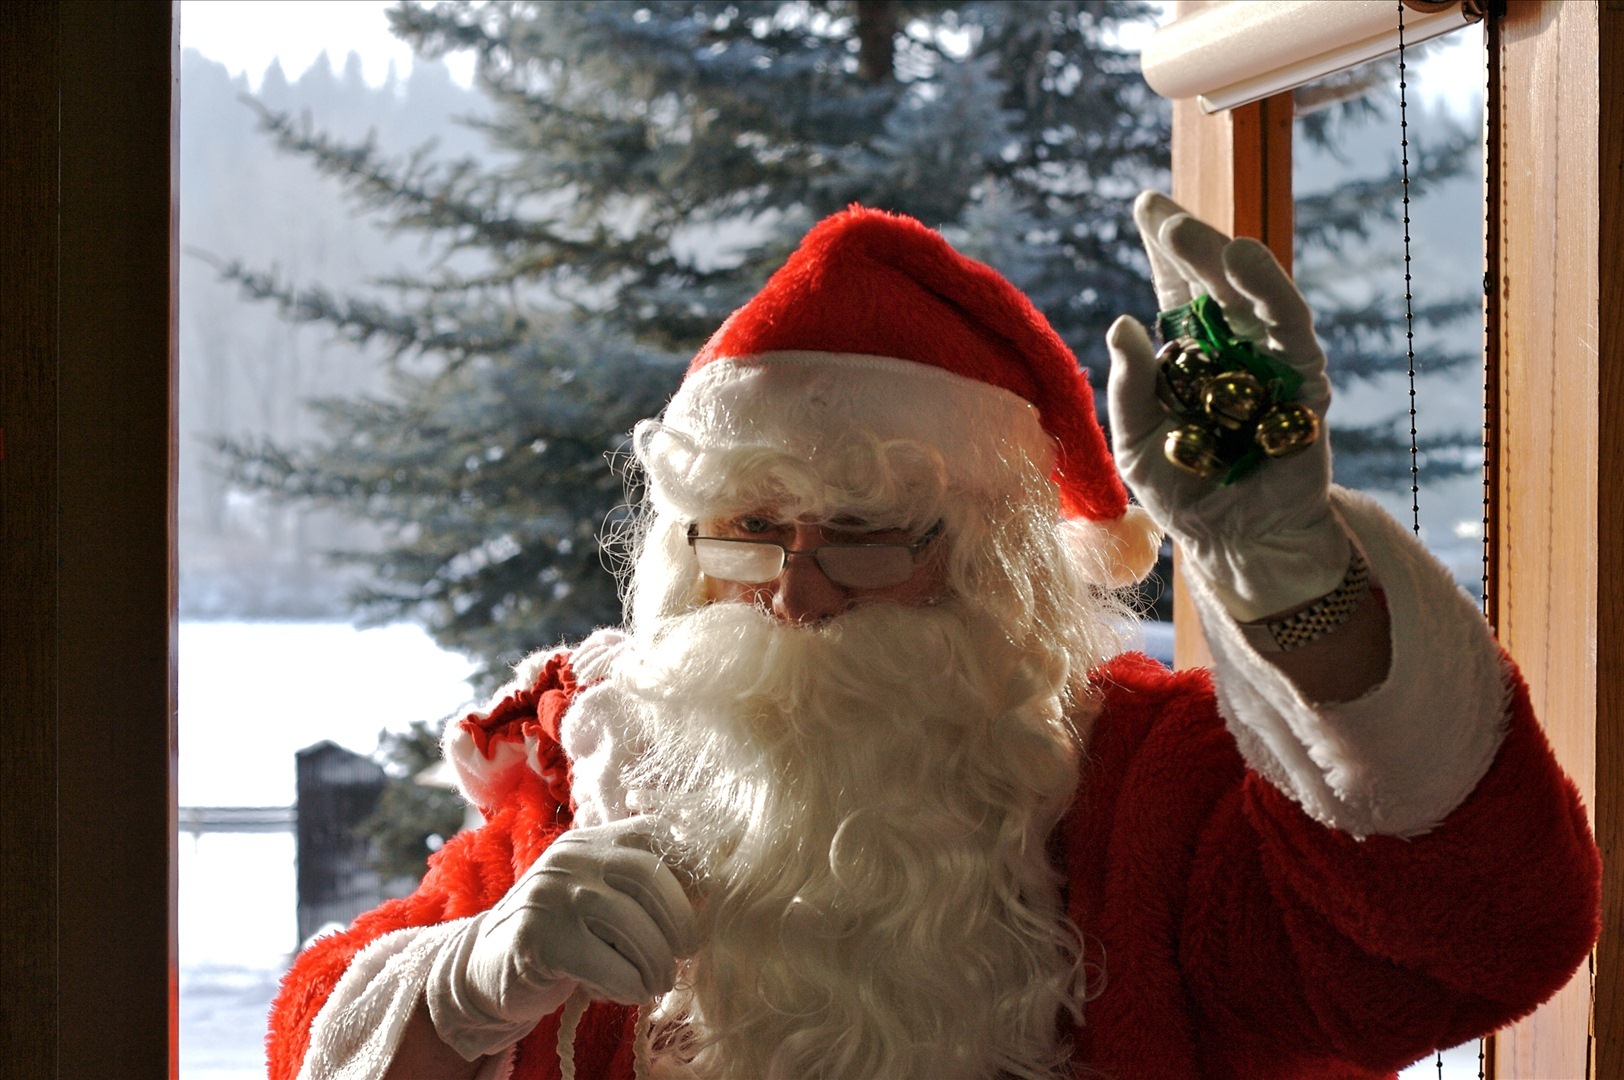 Et si le père Noël sortait toute l'année maintenant ? Avec sa grande barbe, il ne craint pas les rayons du soleil. Tant mieux, puisqu'en Laponie, où il vit,&nbsp;l'astre du jour n'est presque jamais couché à la belle saison.&nbsp;© D'Arcy Norman, Fotopédia, cc by 2.0